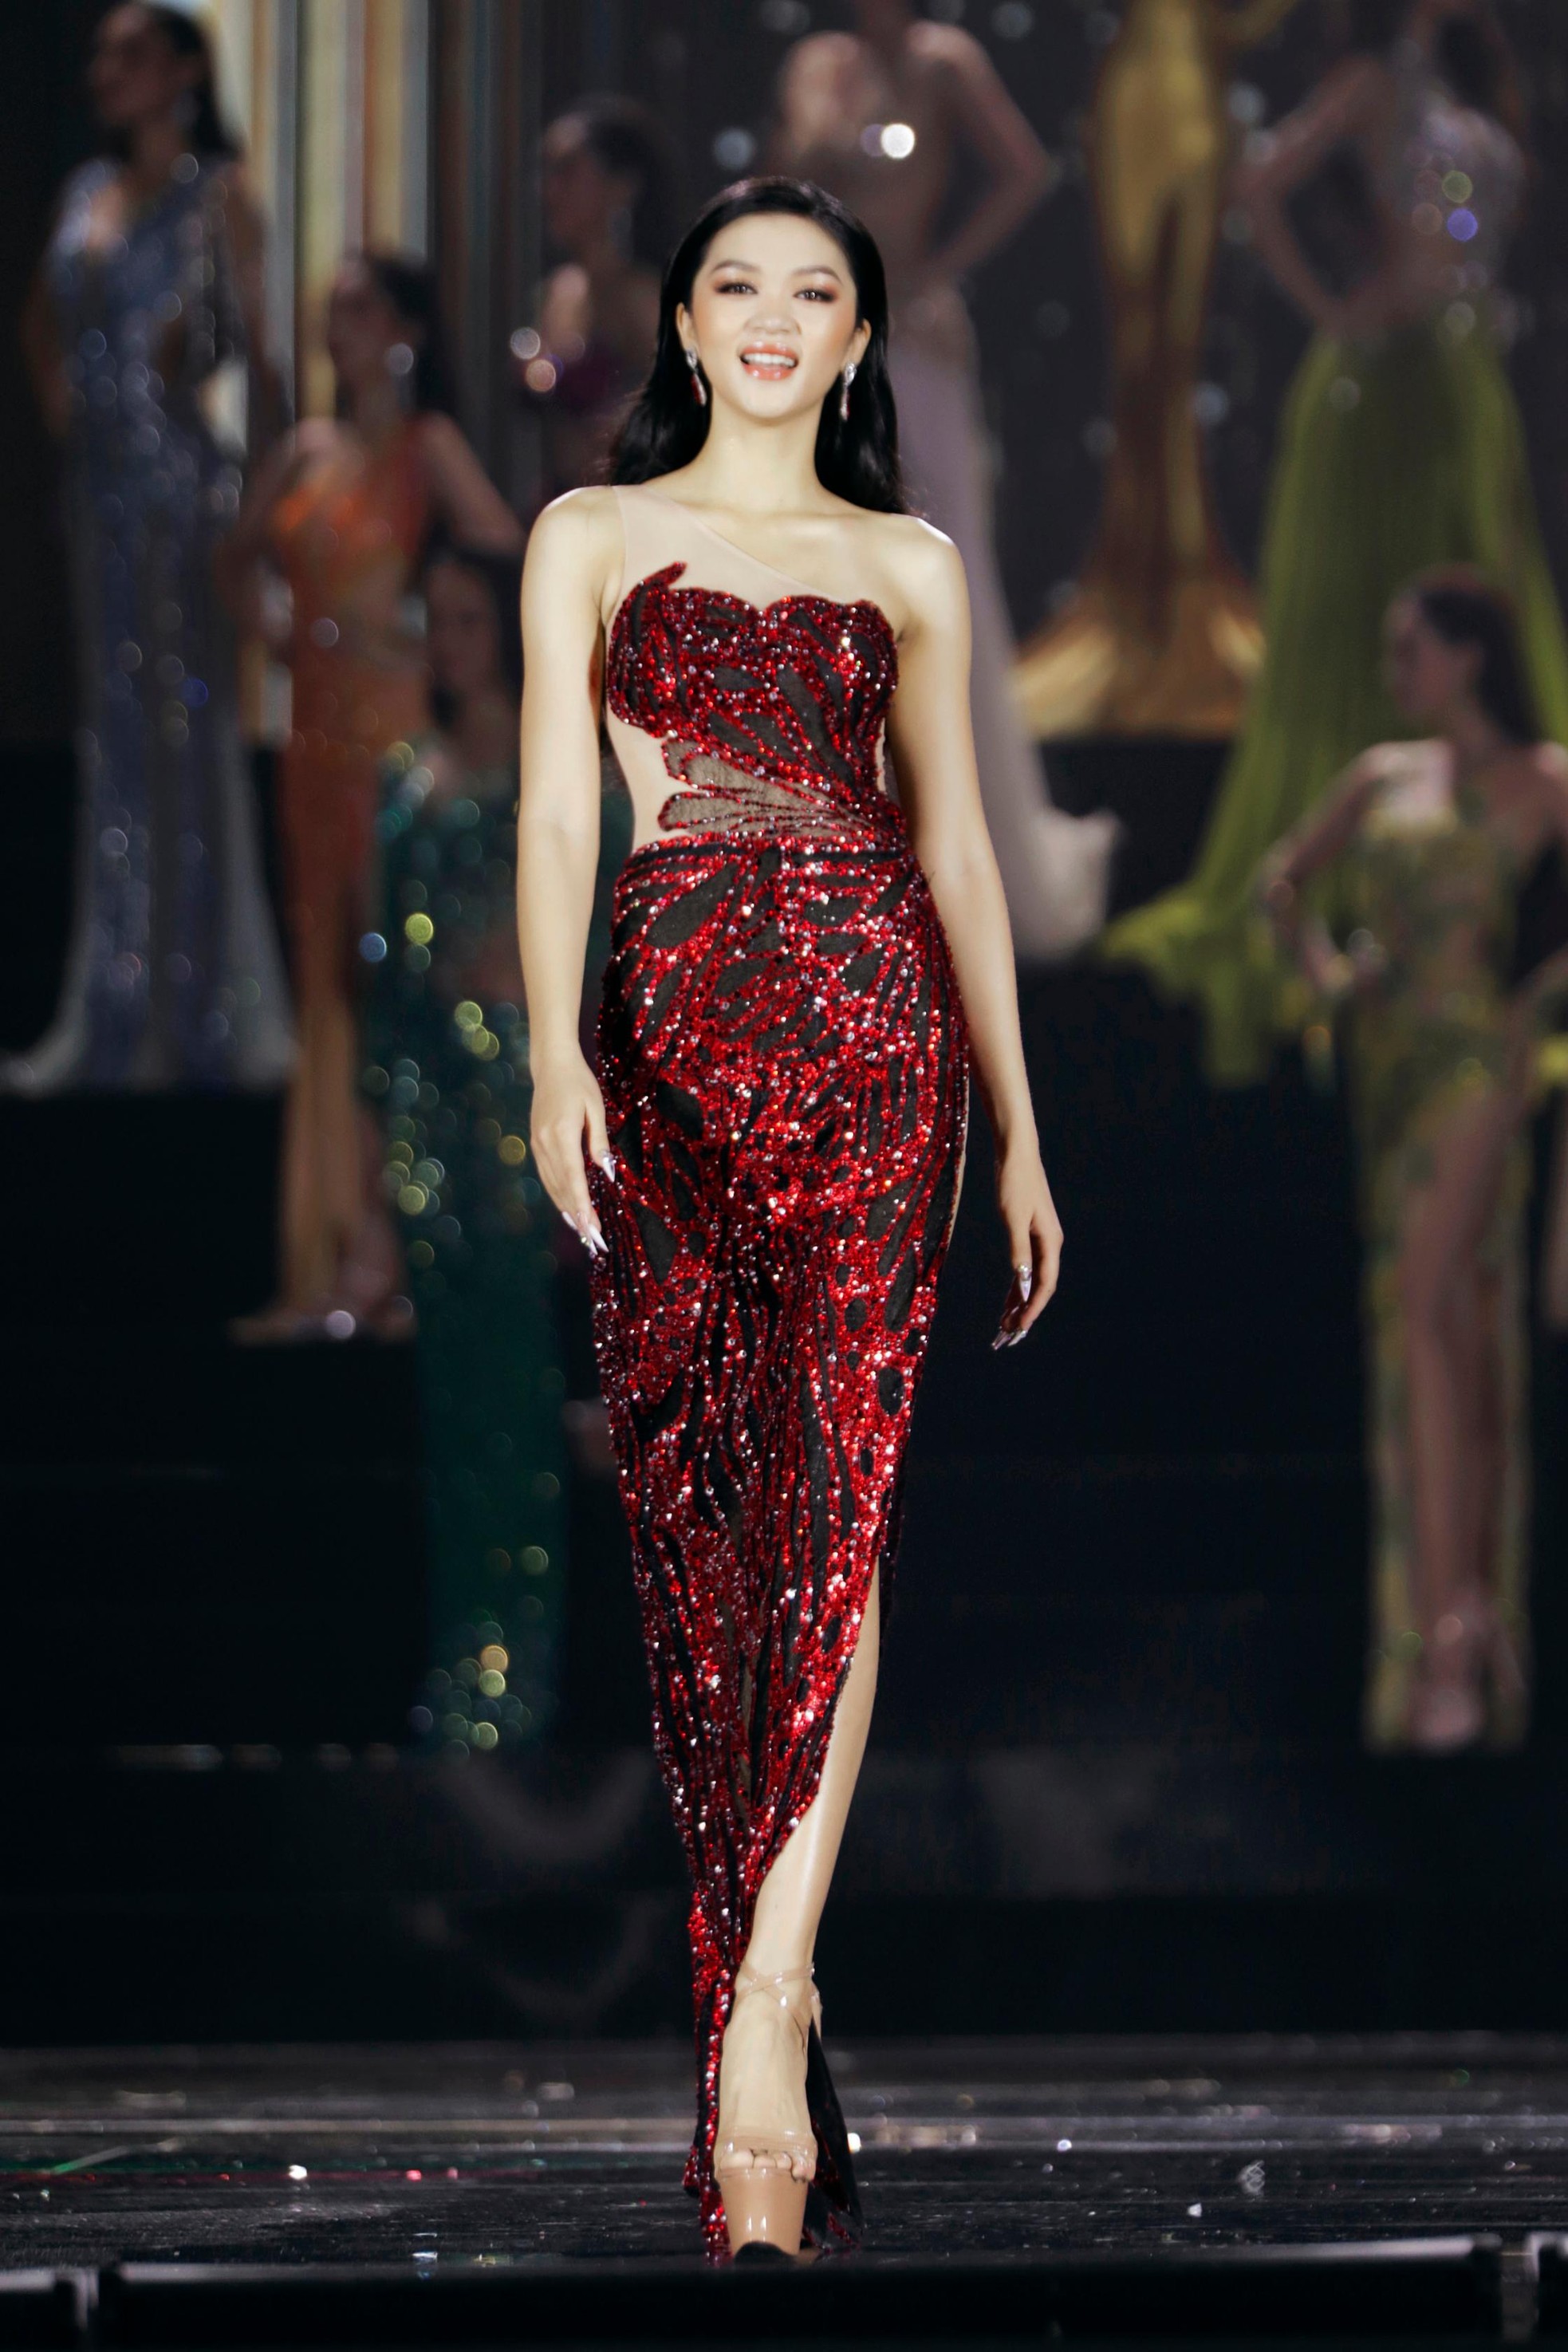 Váy xuyên thấu, xẻ sâu ở Hoa hậu Hòa bình Việt Nam 2022 - ảnh 3